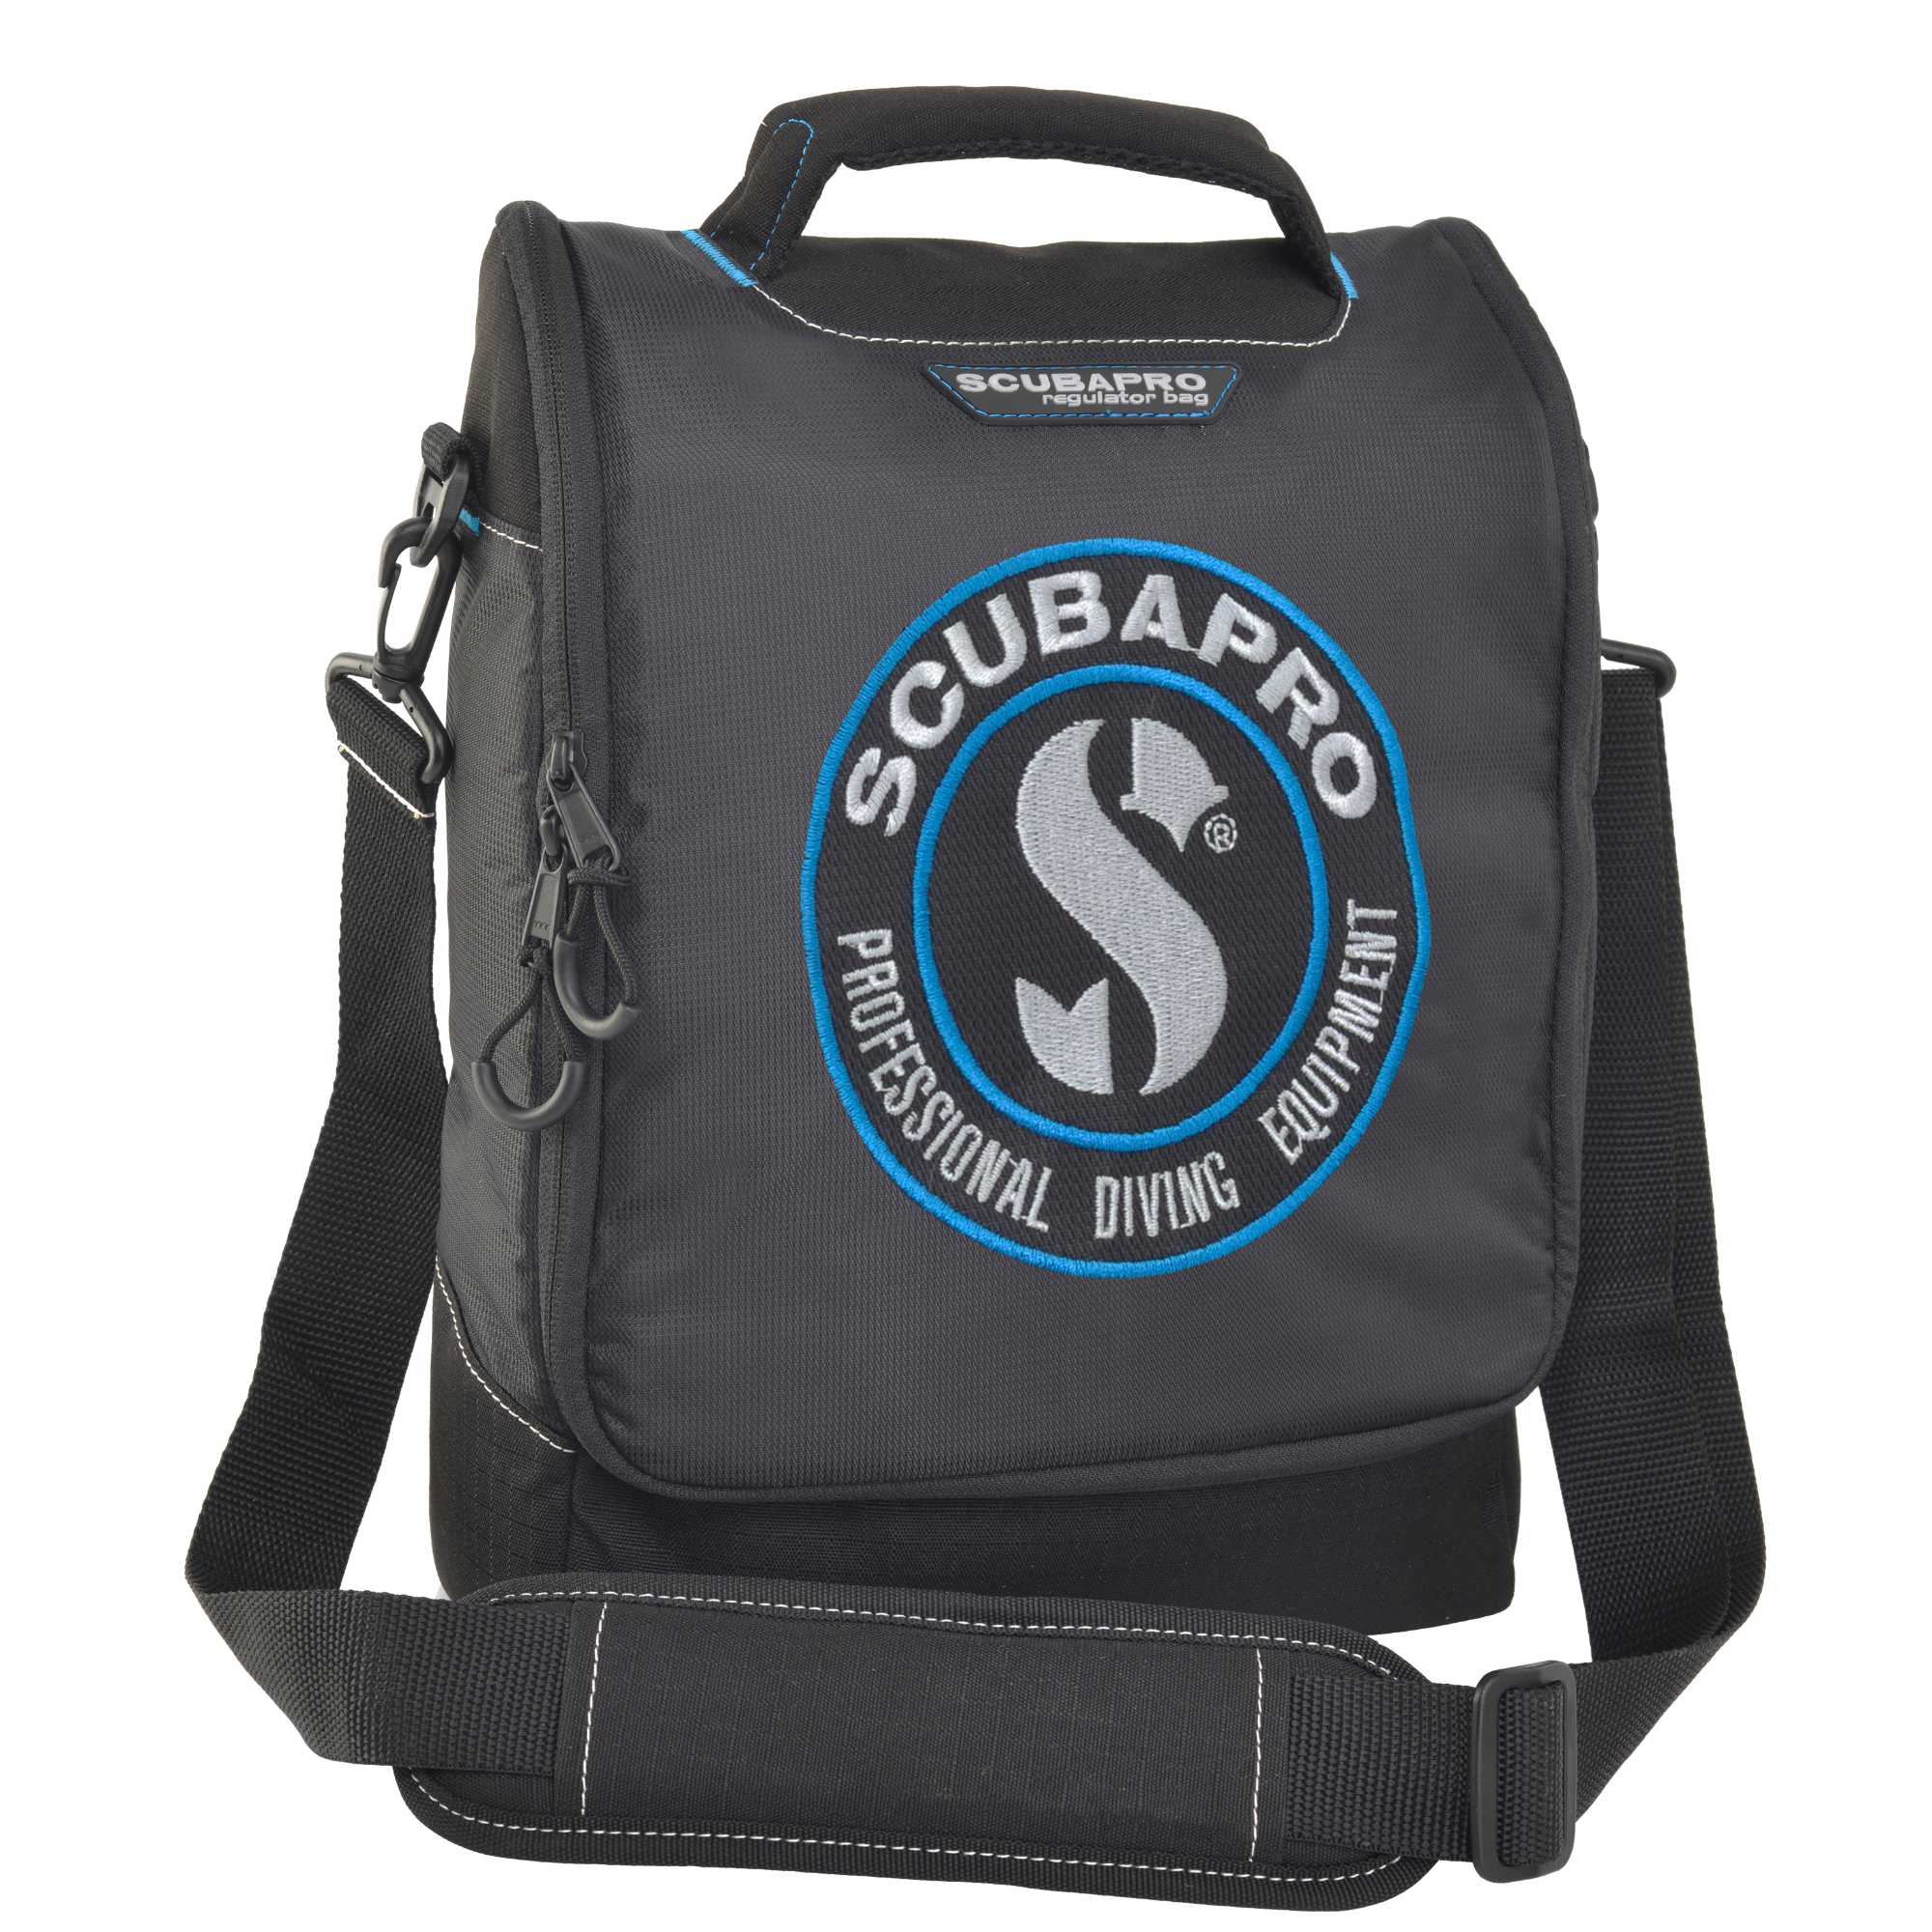 Atemreglertasche mit Computer Bag von Scubapro